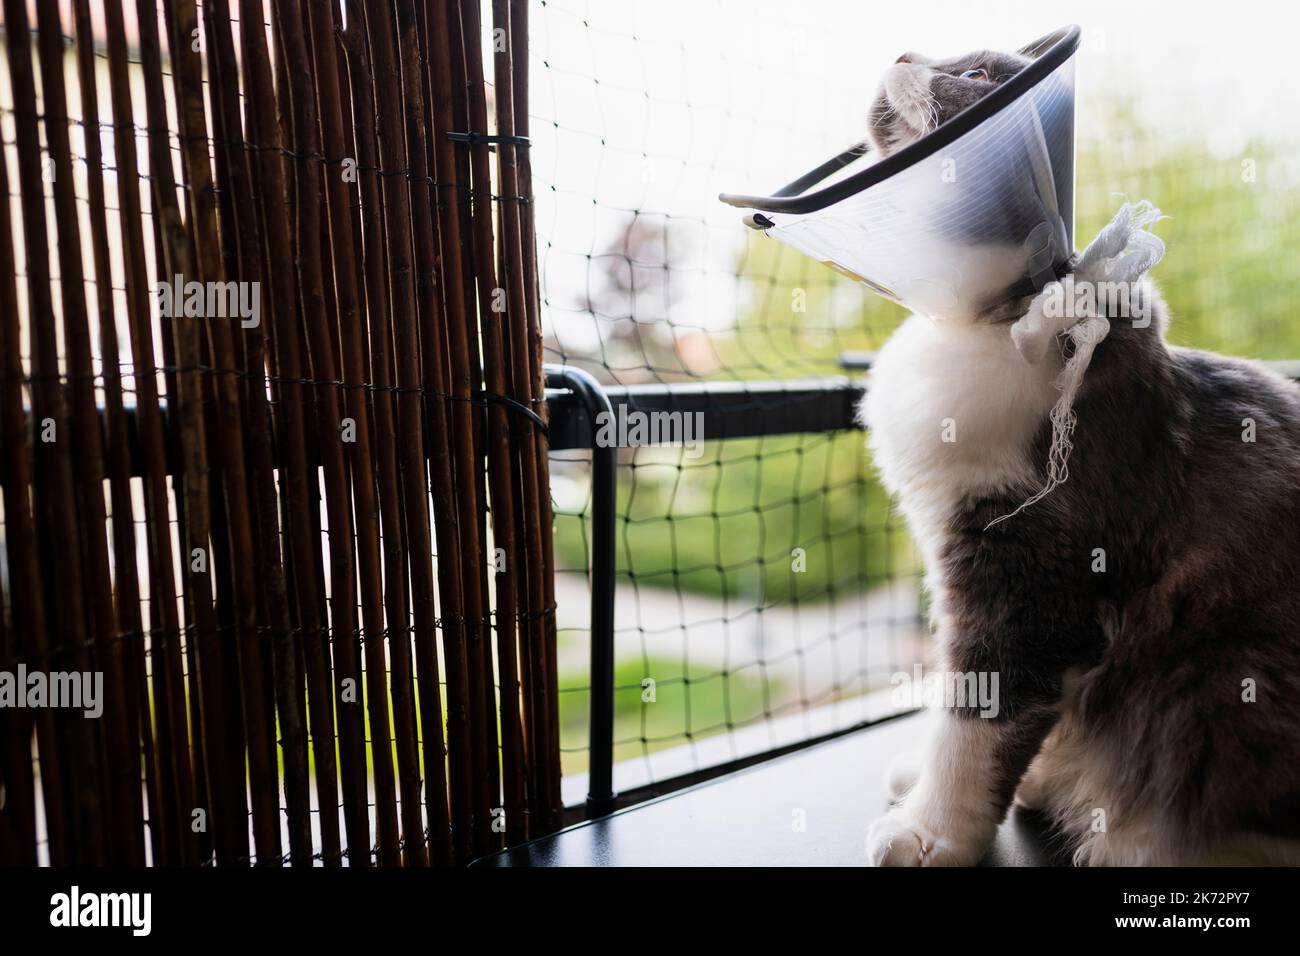 Cat wearing veterinary collar Stock Photo